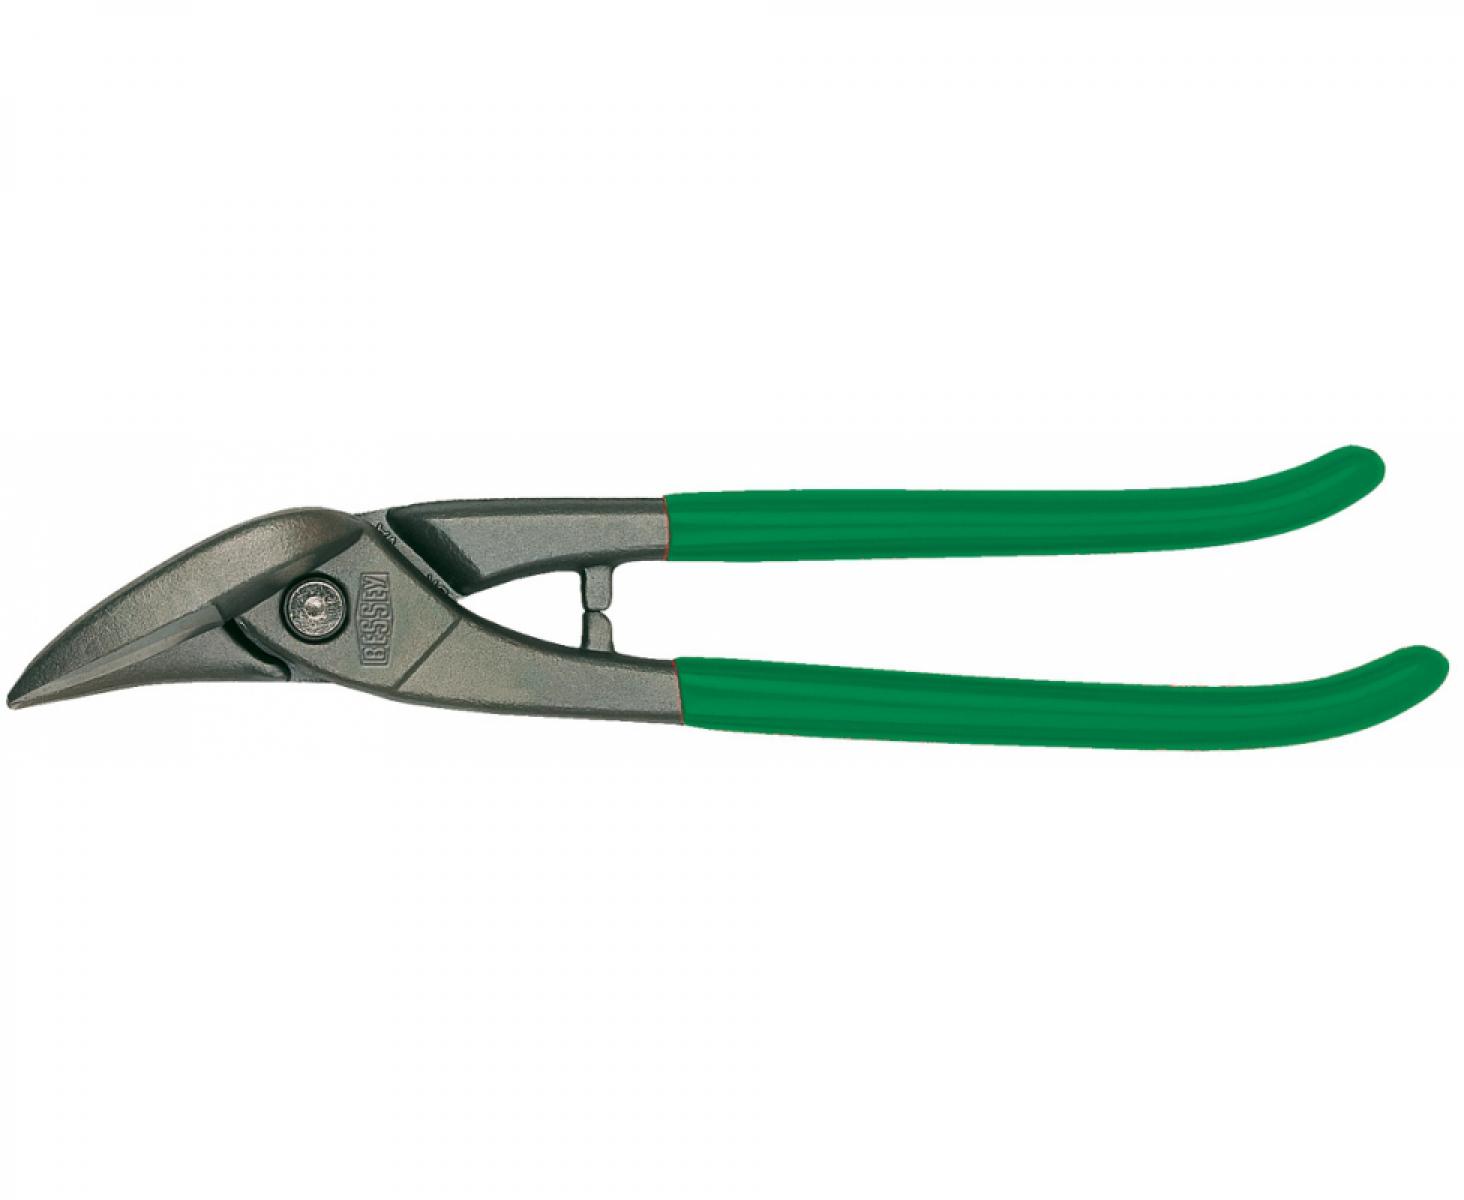 Идеальные обычные ножницы для резки листового металла Erdi ER-D116-260-SB праворежущие